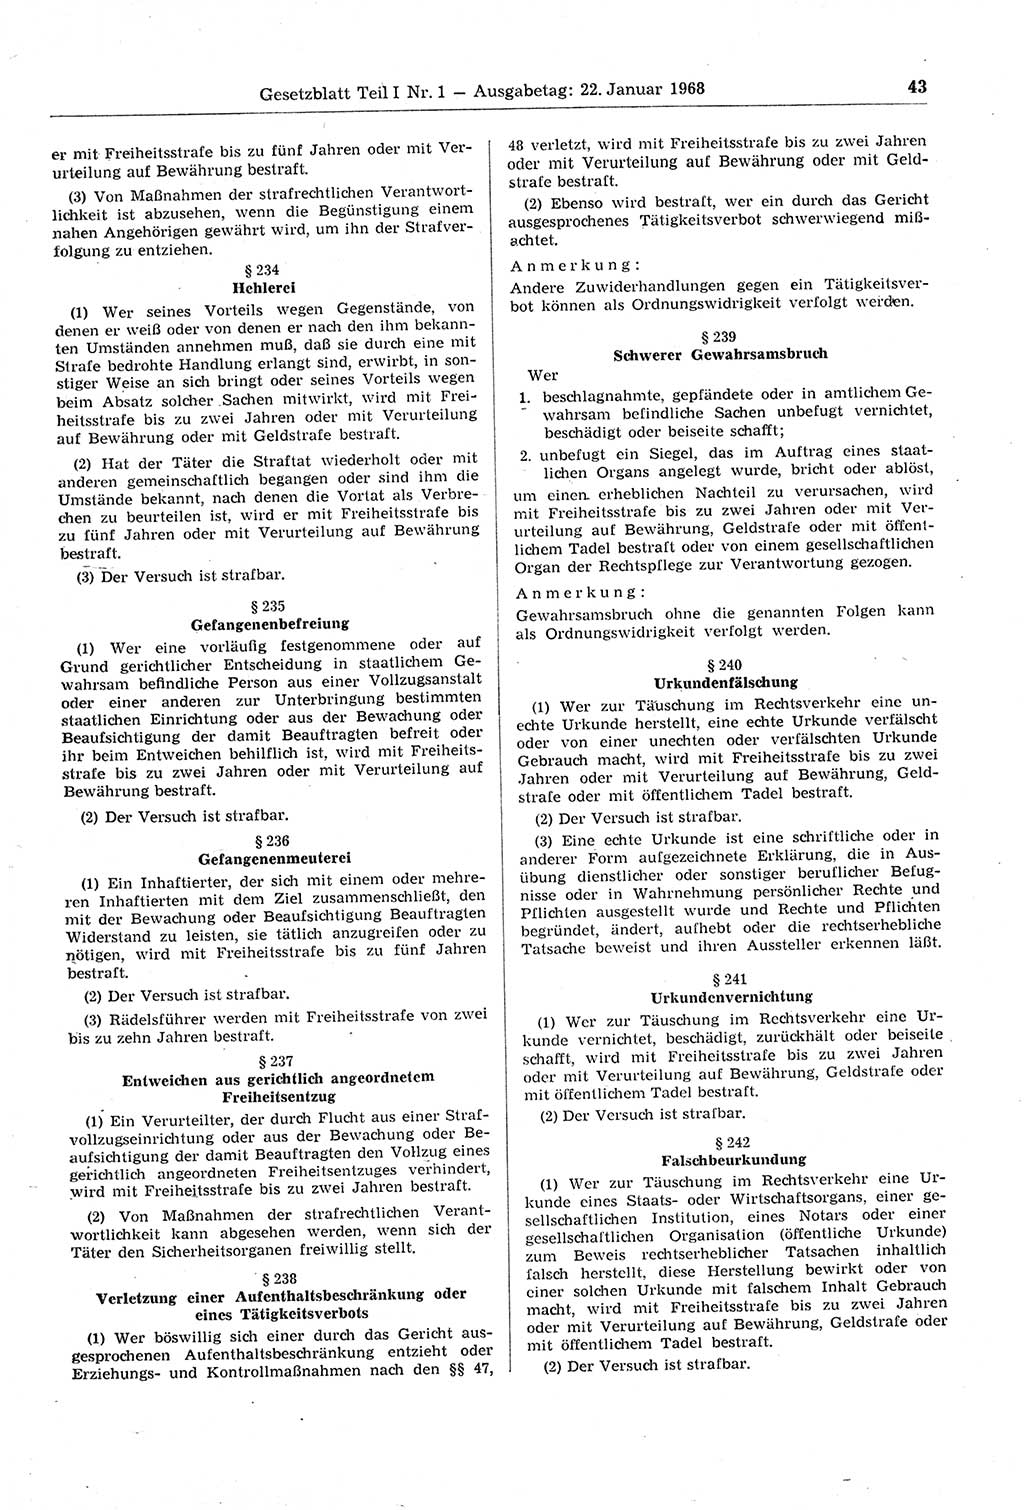 Gesetzblatt (GBl.) der Deutschen Demokratischen Republik (DDR) Teil Ⅰ 1968, Seite 43 (GBl. DDR Ⅰ 1968, S. 43)